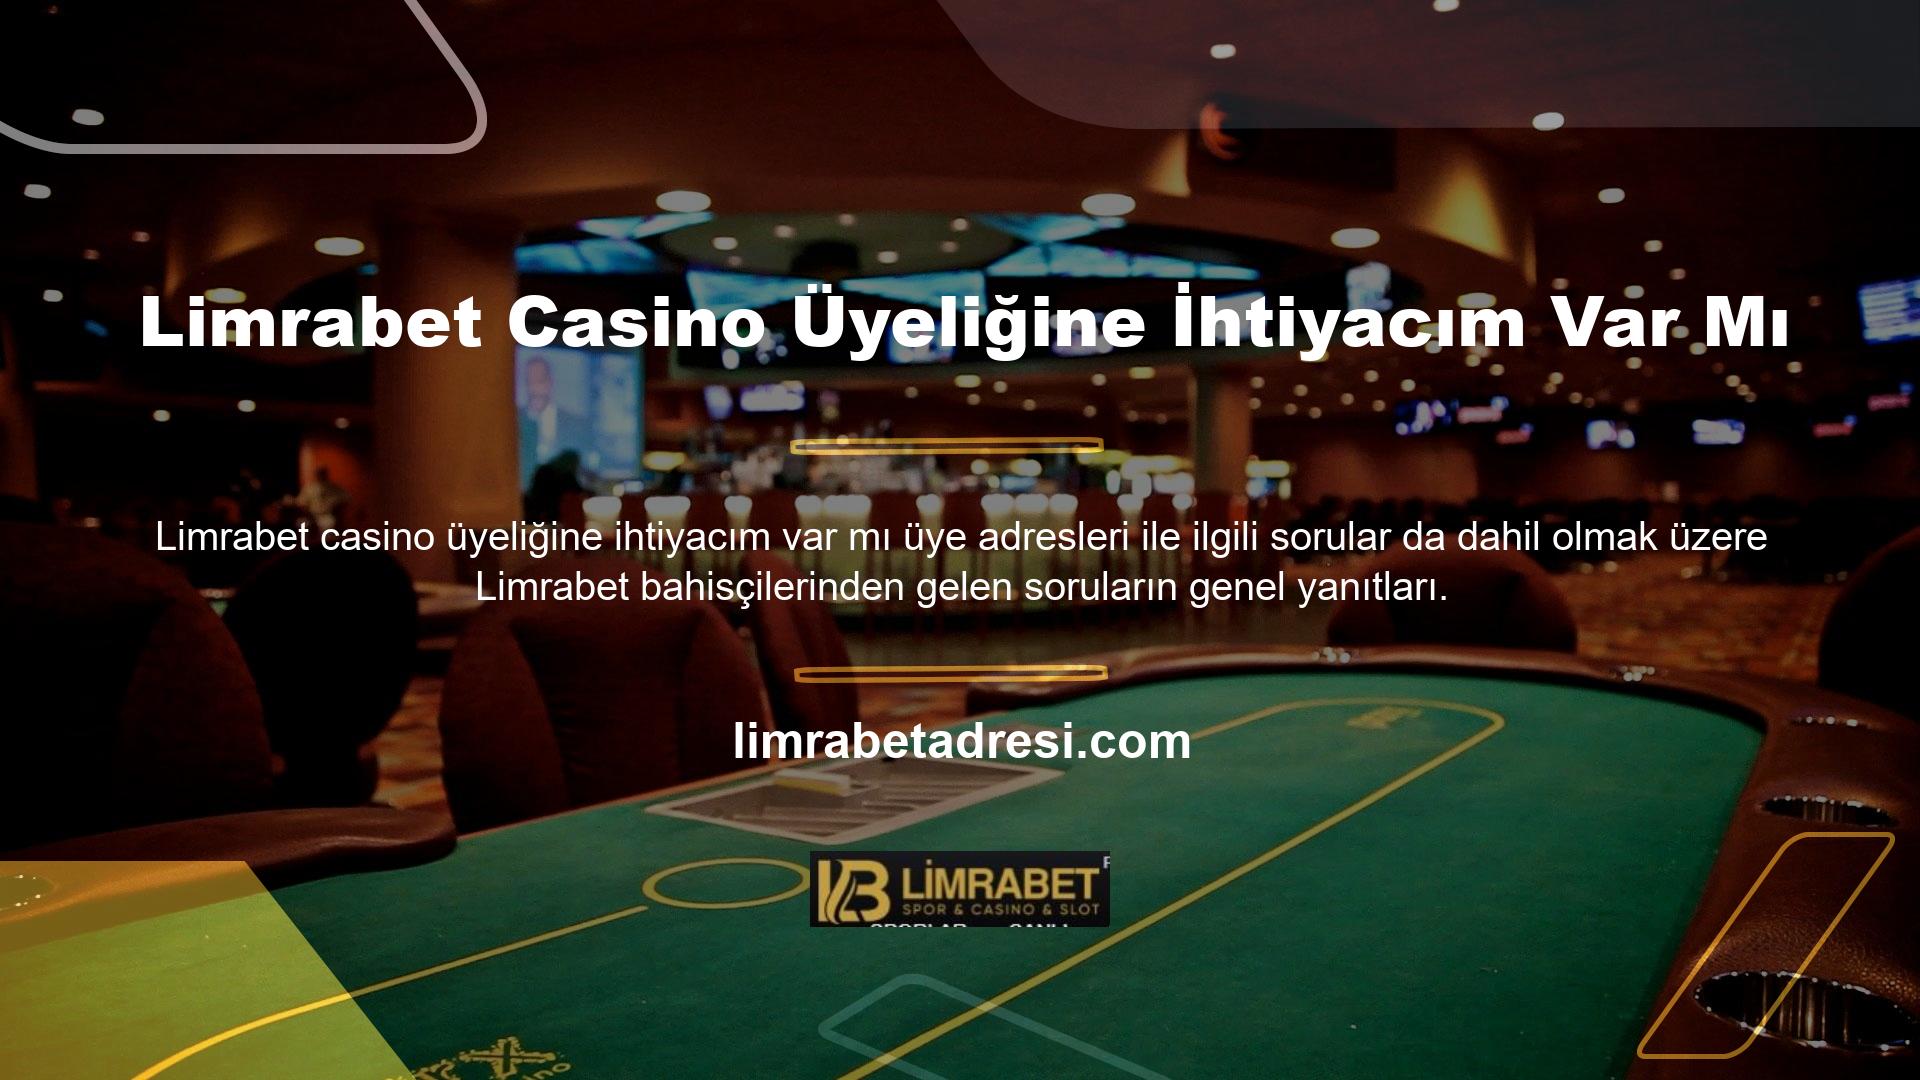 Canlı Casino bölümünü veya Site tarafından işletilen diğer bahis bölümlerini kullanmak için üyelik gereklidir